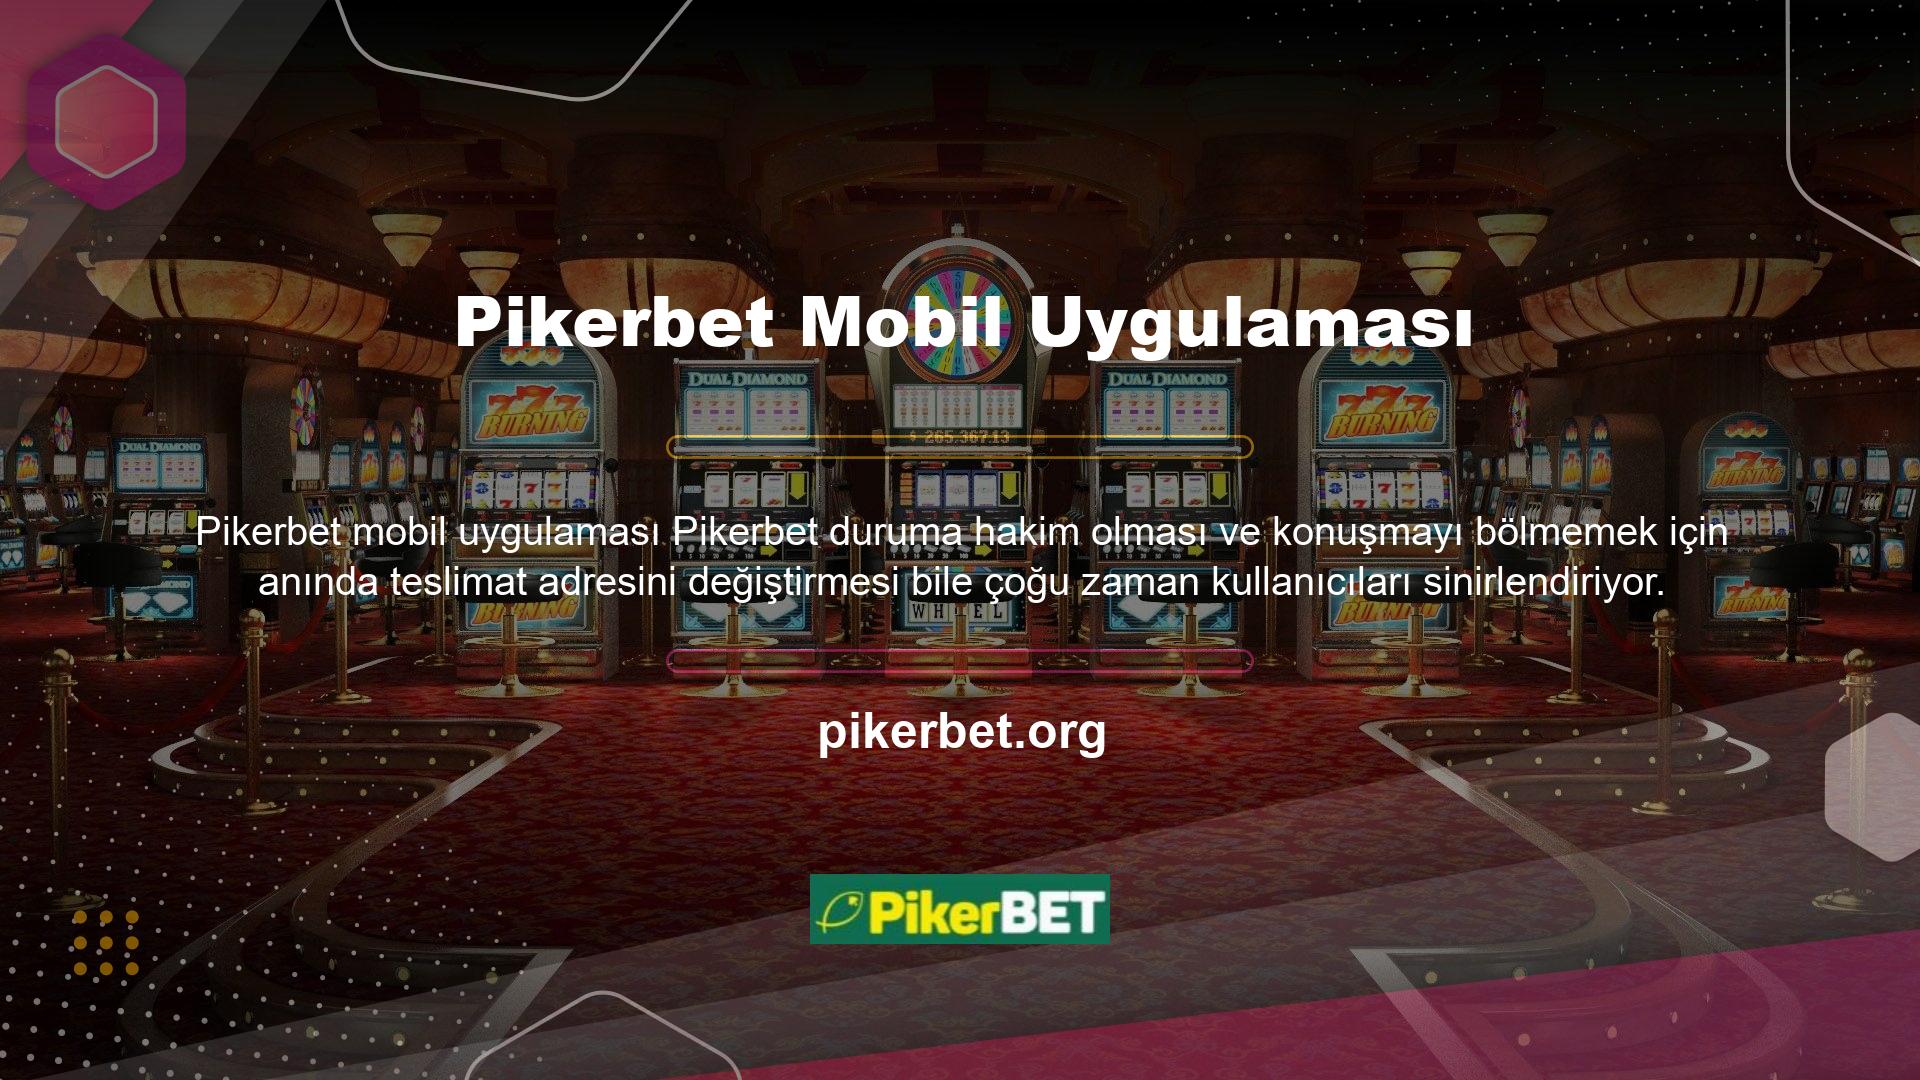 Pikerbet mobil uygulaması adres değişikliğinden rahatsız olanlar için tasarlanmıştır